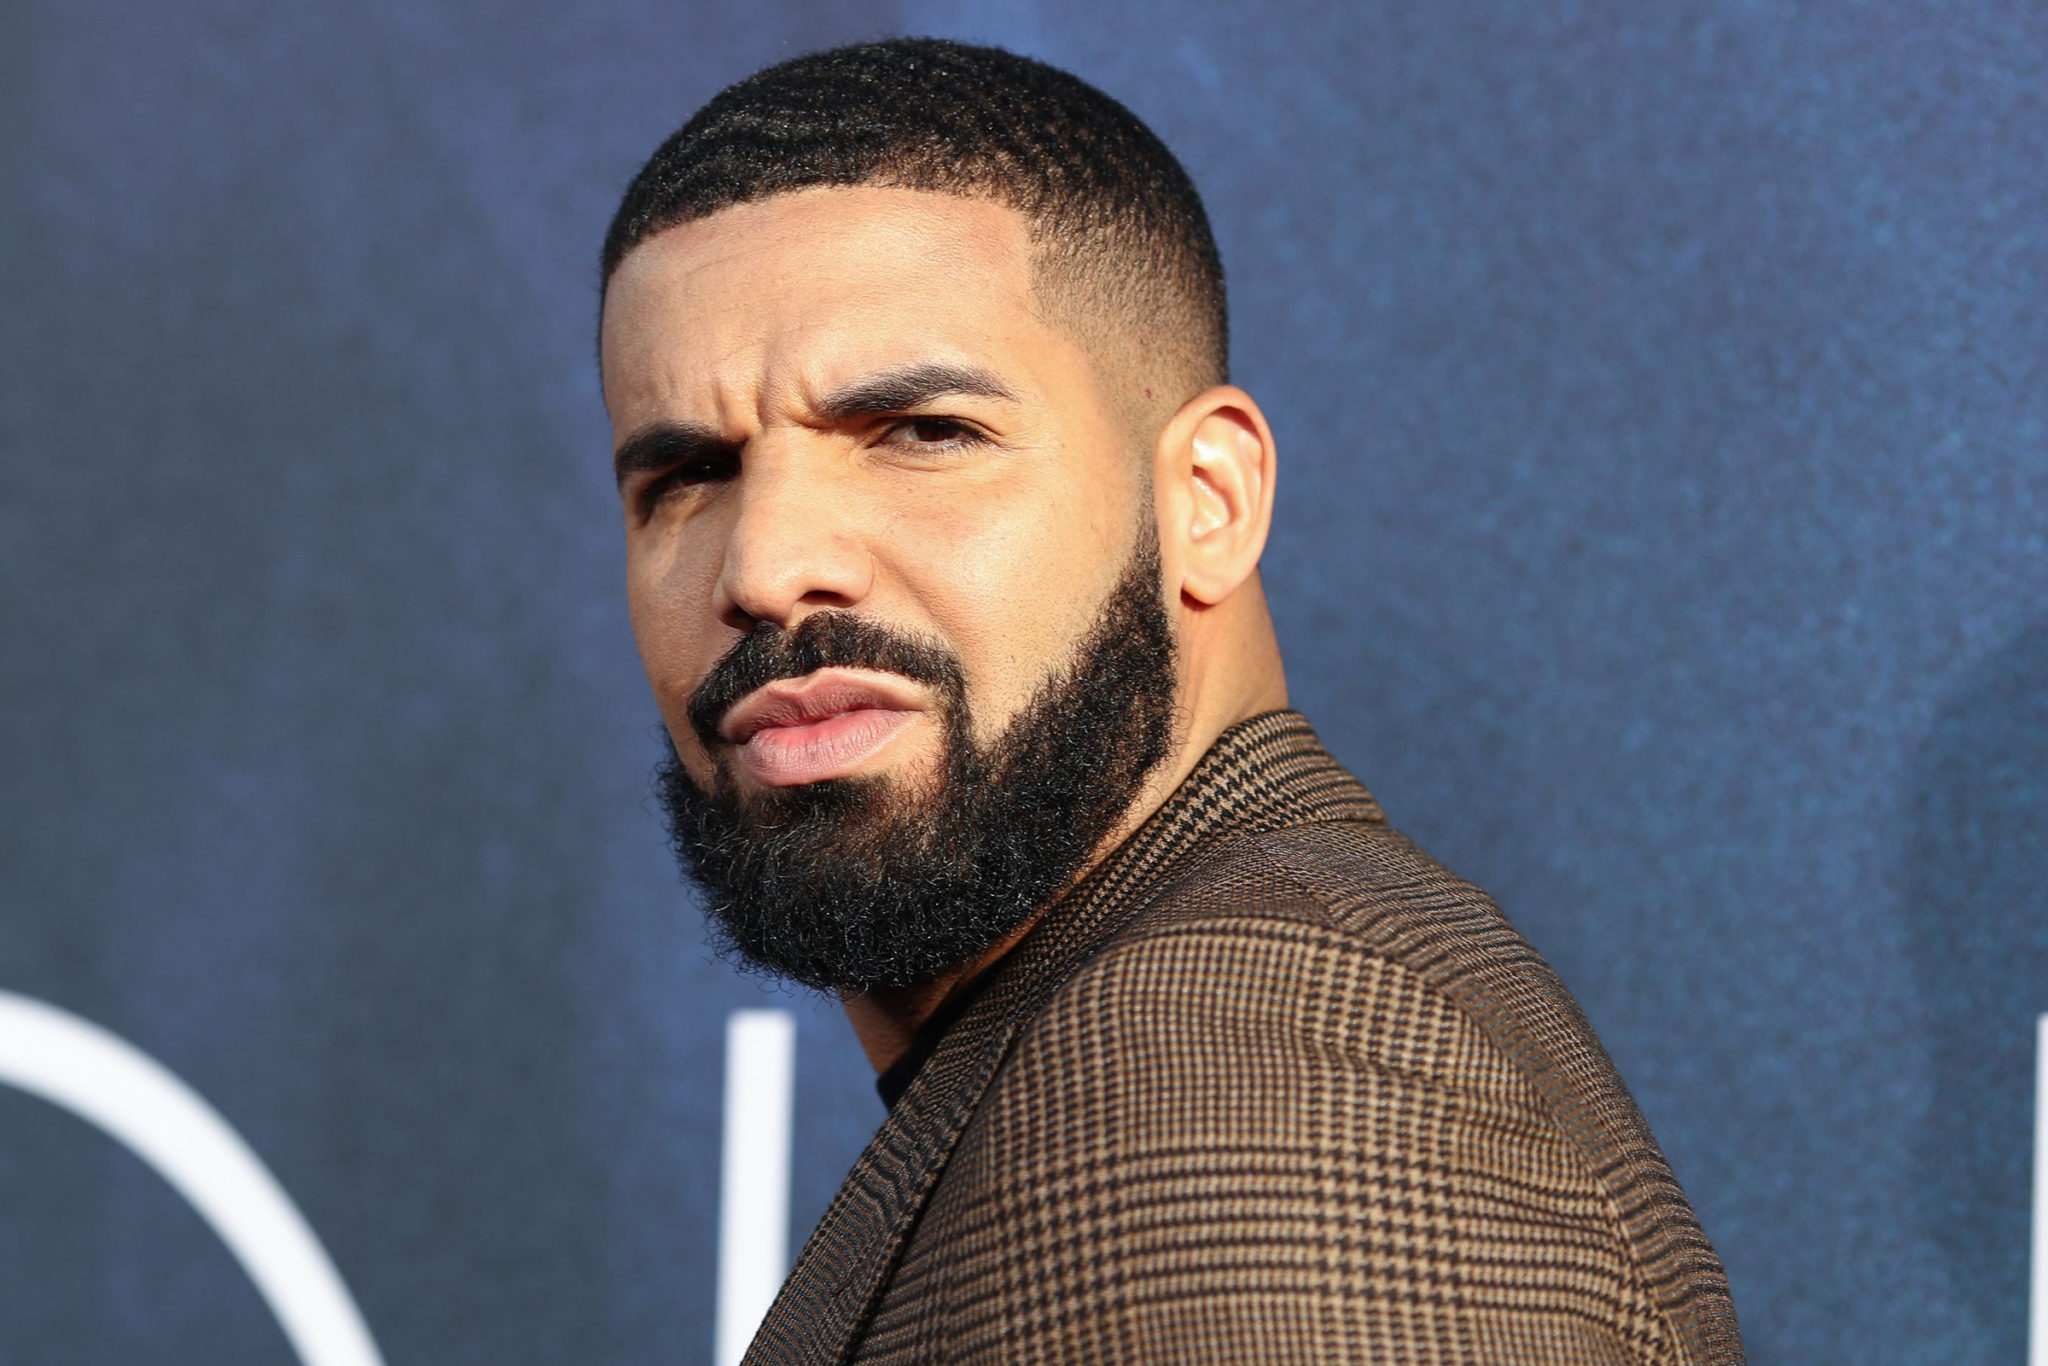 Kënga e Drake fshihet nga Instagrami pas reagimit të përfaqësuesve ligjor të Tupacut